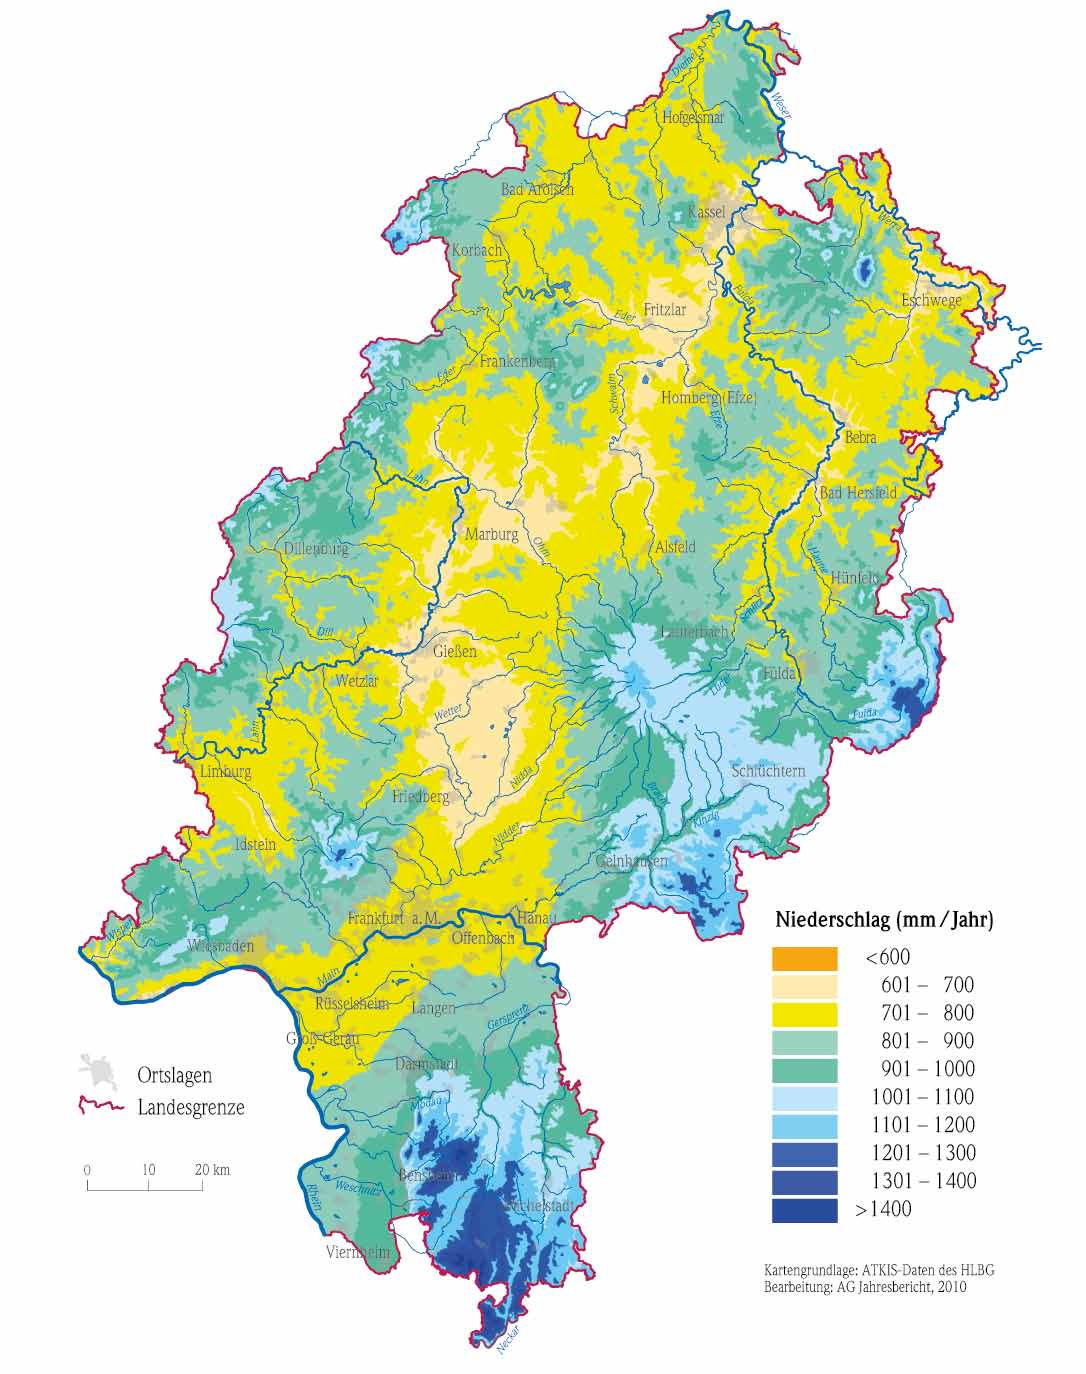 Hydrologie in Hessen, Heft 7 Gewässerkundlicher Jahresbericht 2010 Im hessischen Ried sind vergleichsweise zu früheren Jahren höhere Regenmengen mit Werten zwischen 700 und 1000 mm gefallen.